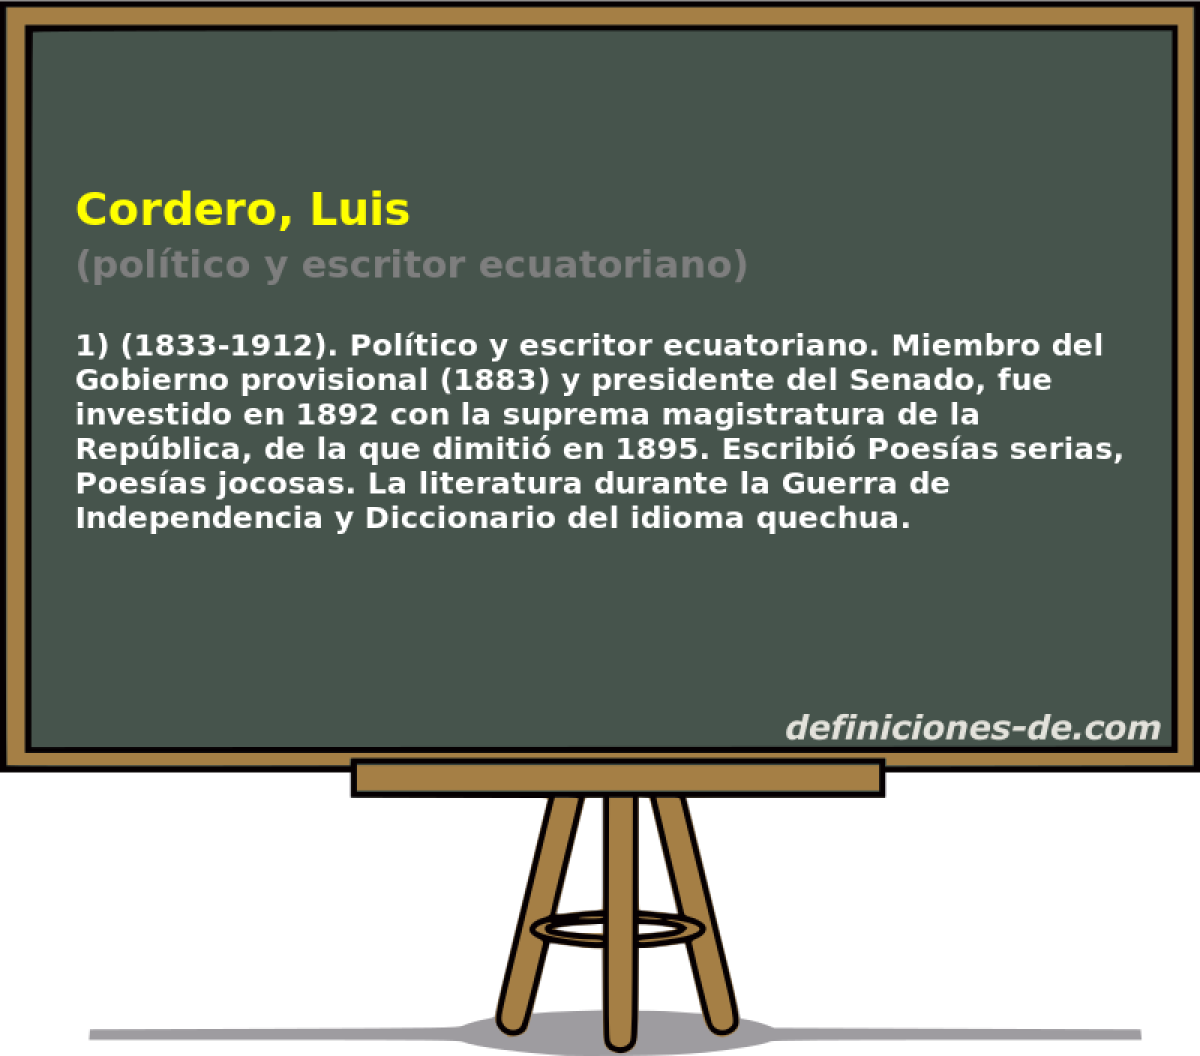 Cordero, Luis (poltico y escritor ecuatoriano)